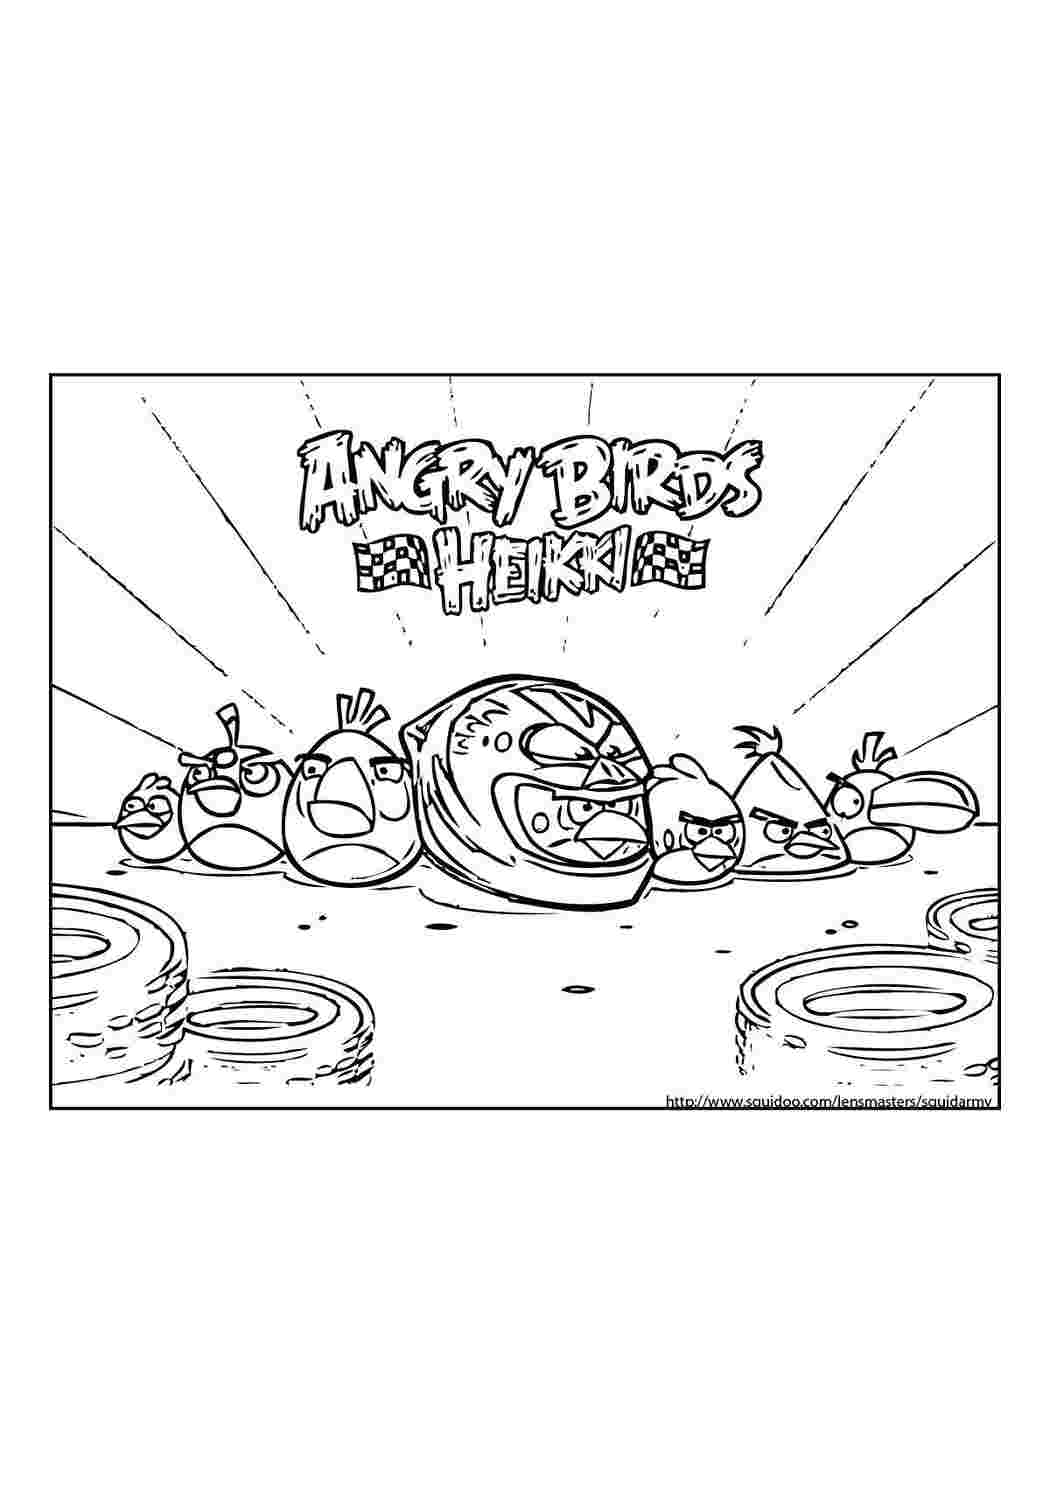 Angry Birds Star Wars - Играть Онлайн Бесплатно